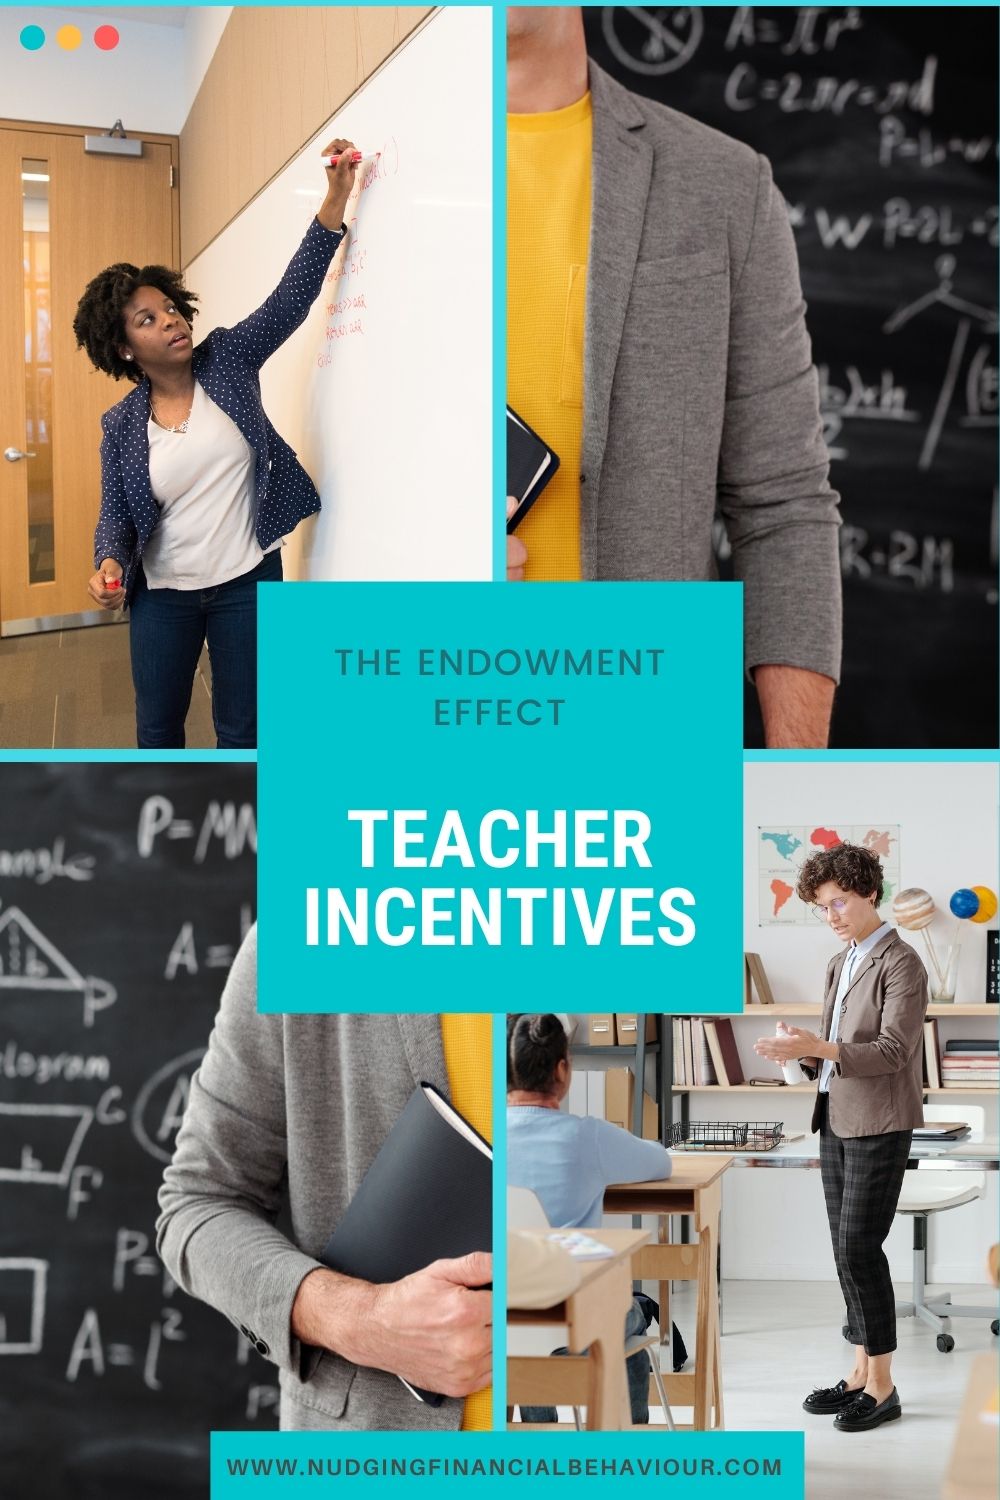 Teacher incentives